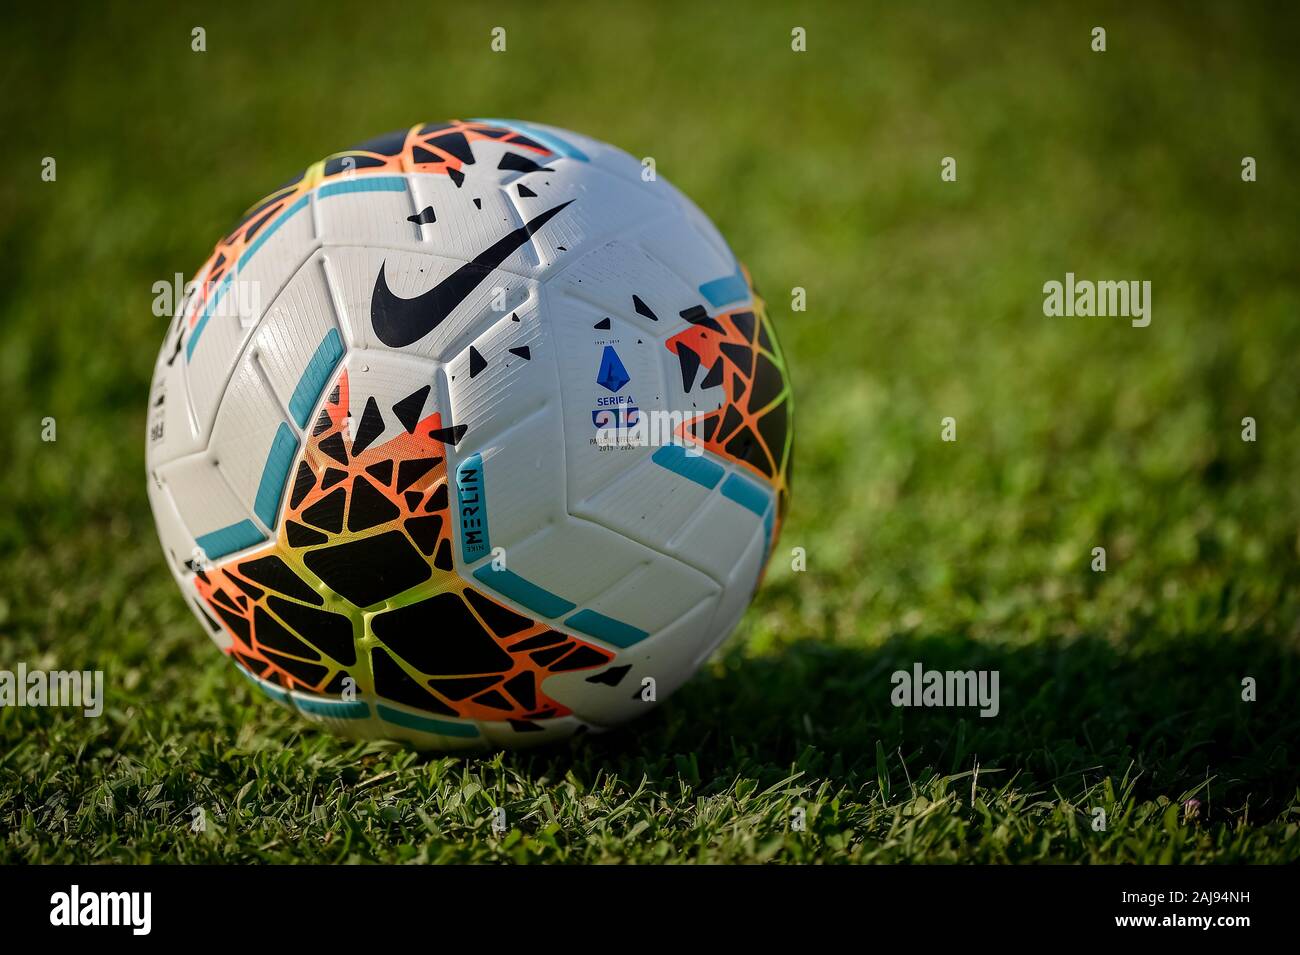 Mantua, Italia. El 10 de agosto, 2019: Serie 2019-2020 oficial un balón Nike Merlin es retratada de la pre-temporada de amistoso entre Brescia y el Real Valladolid CF. Brescia